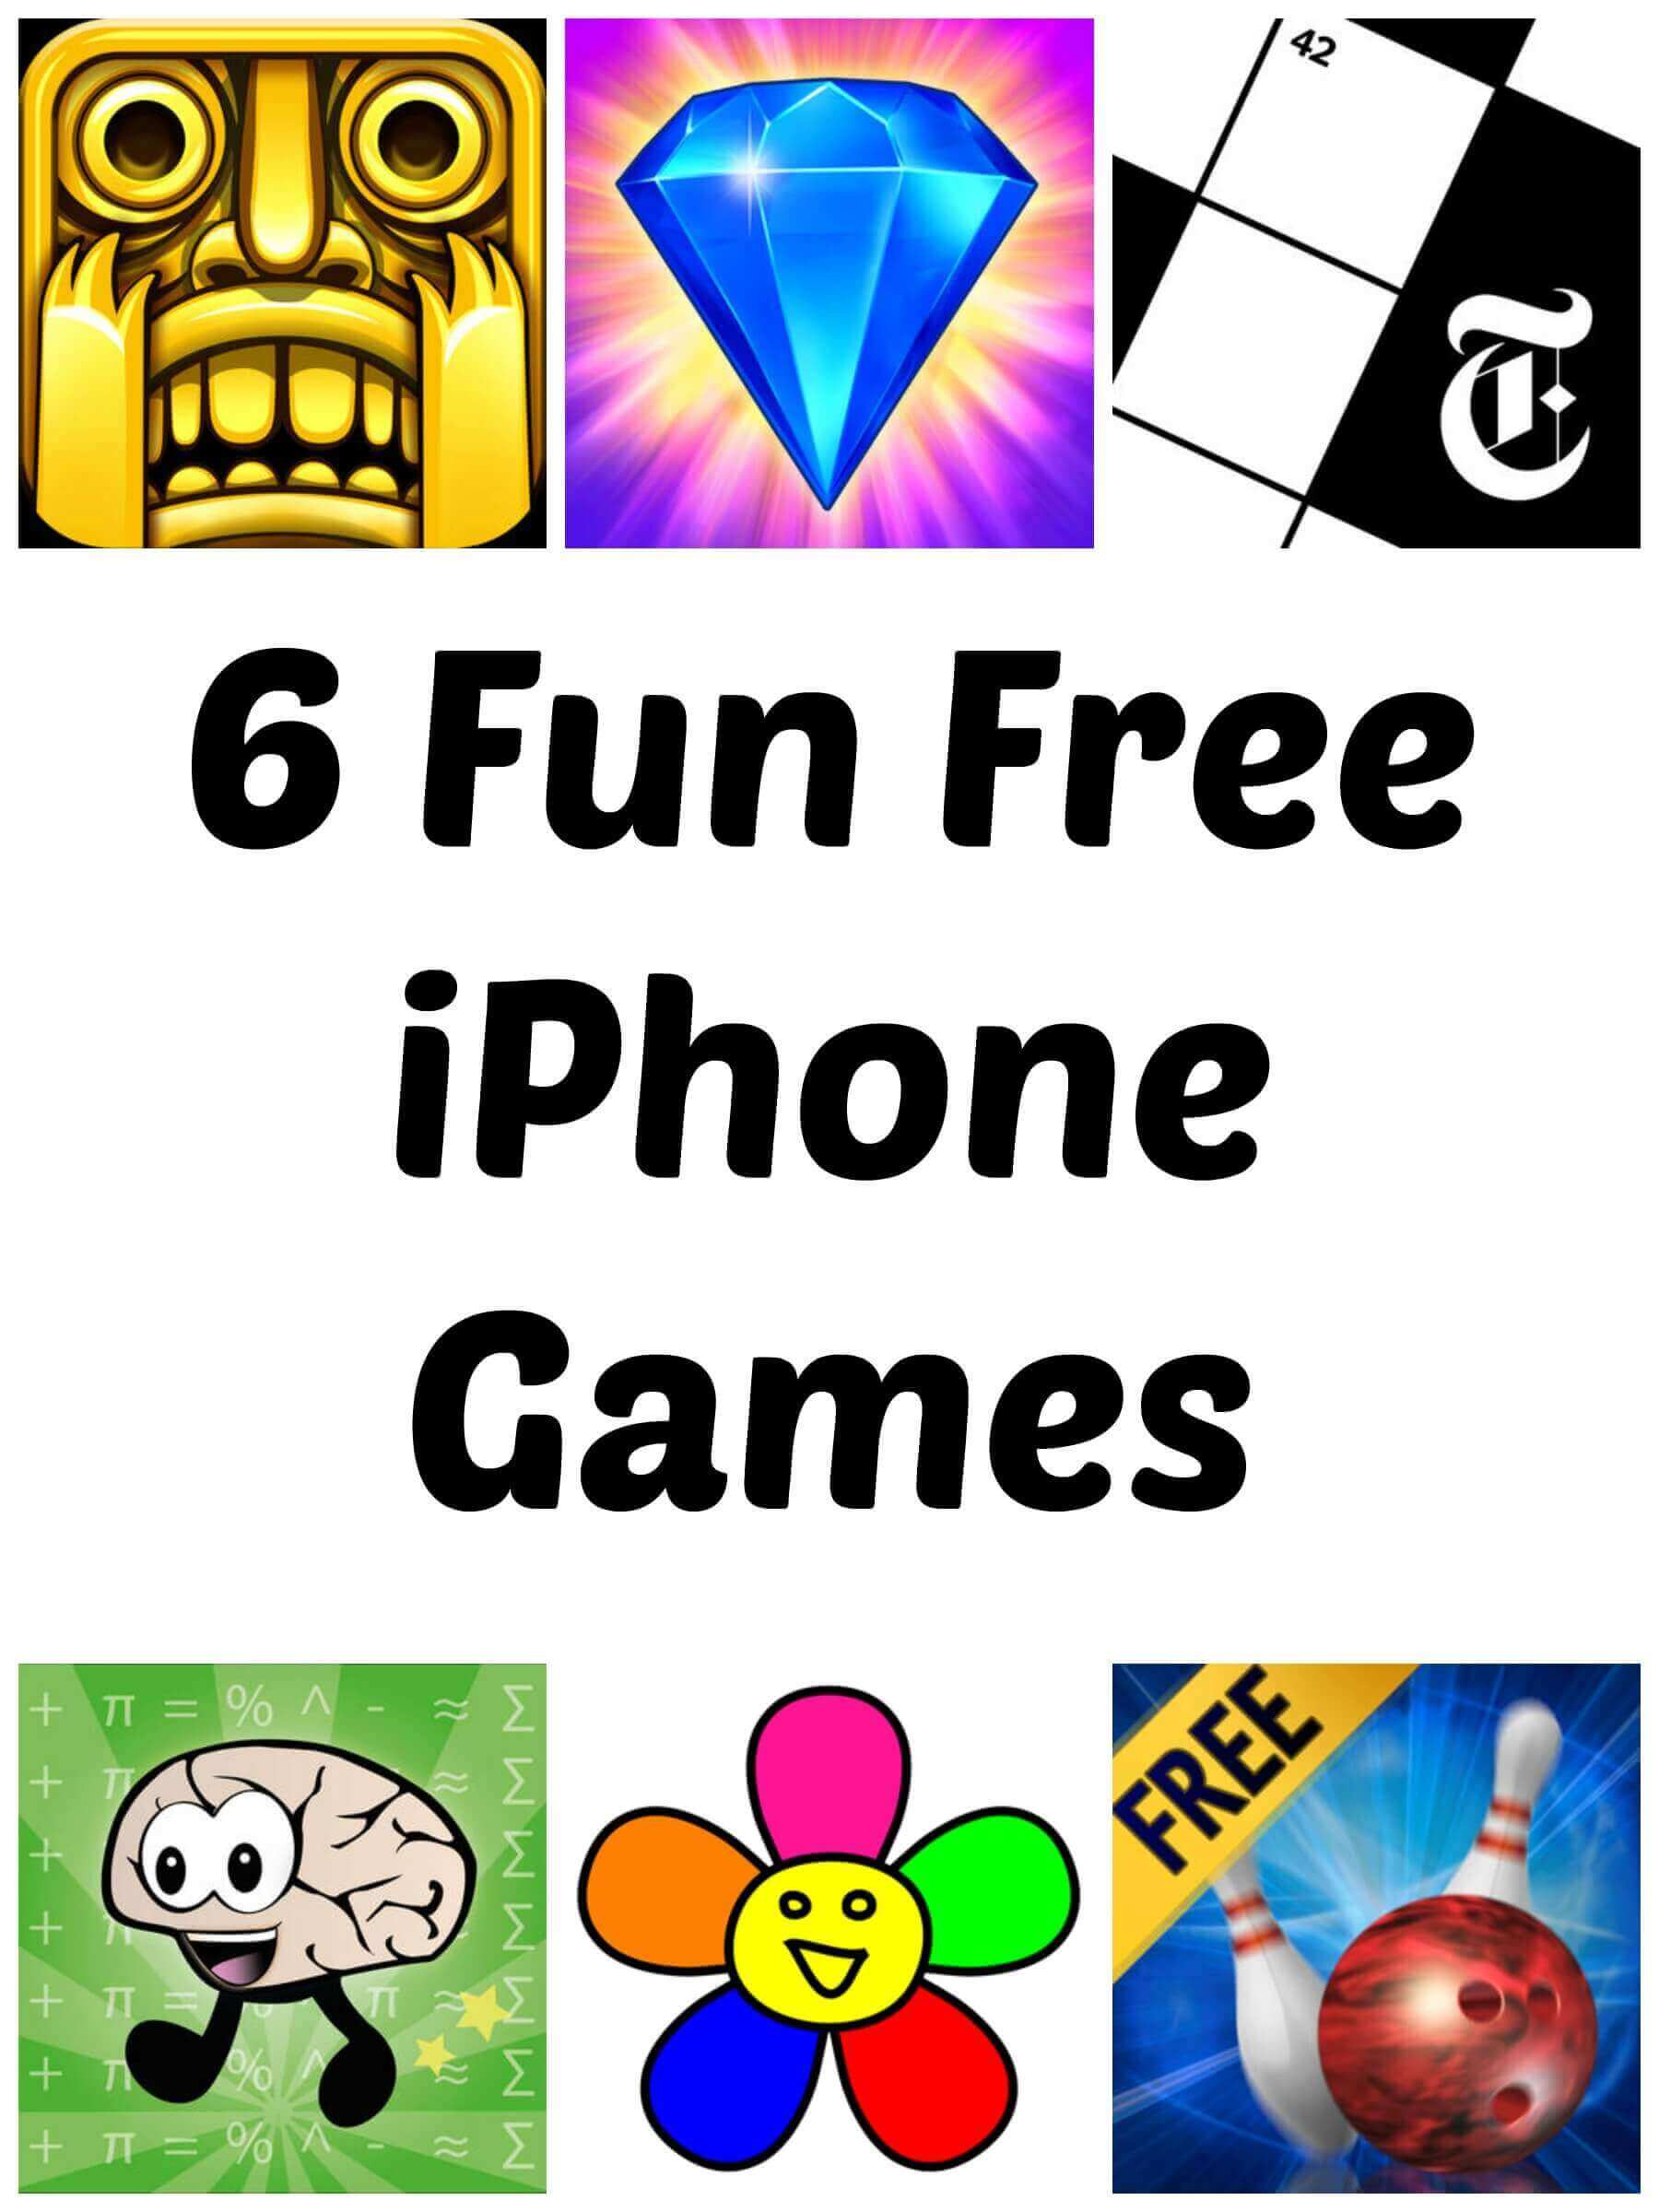 6 Fun Free iPhone Games